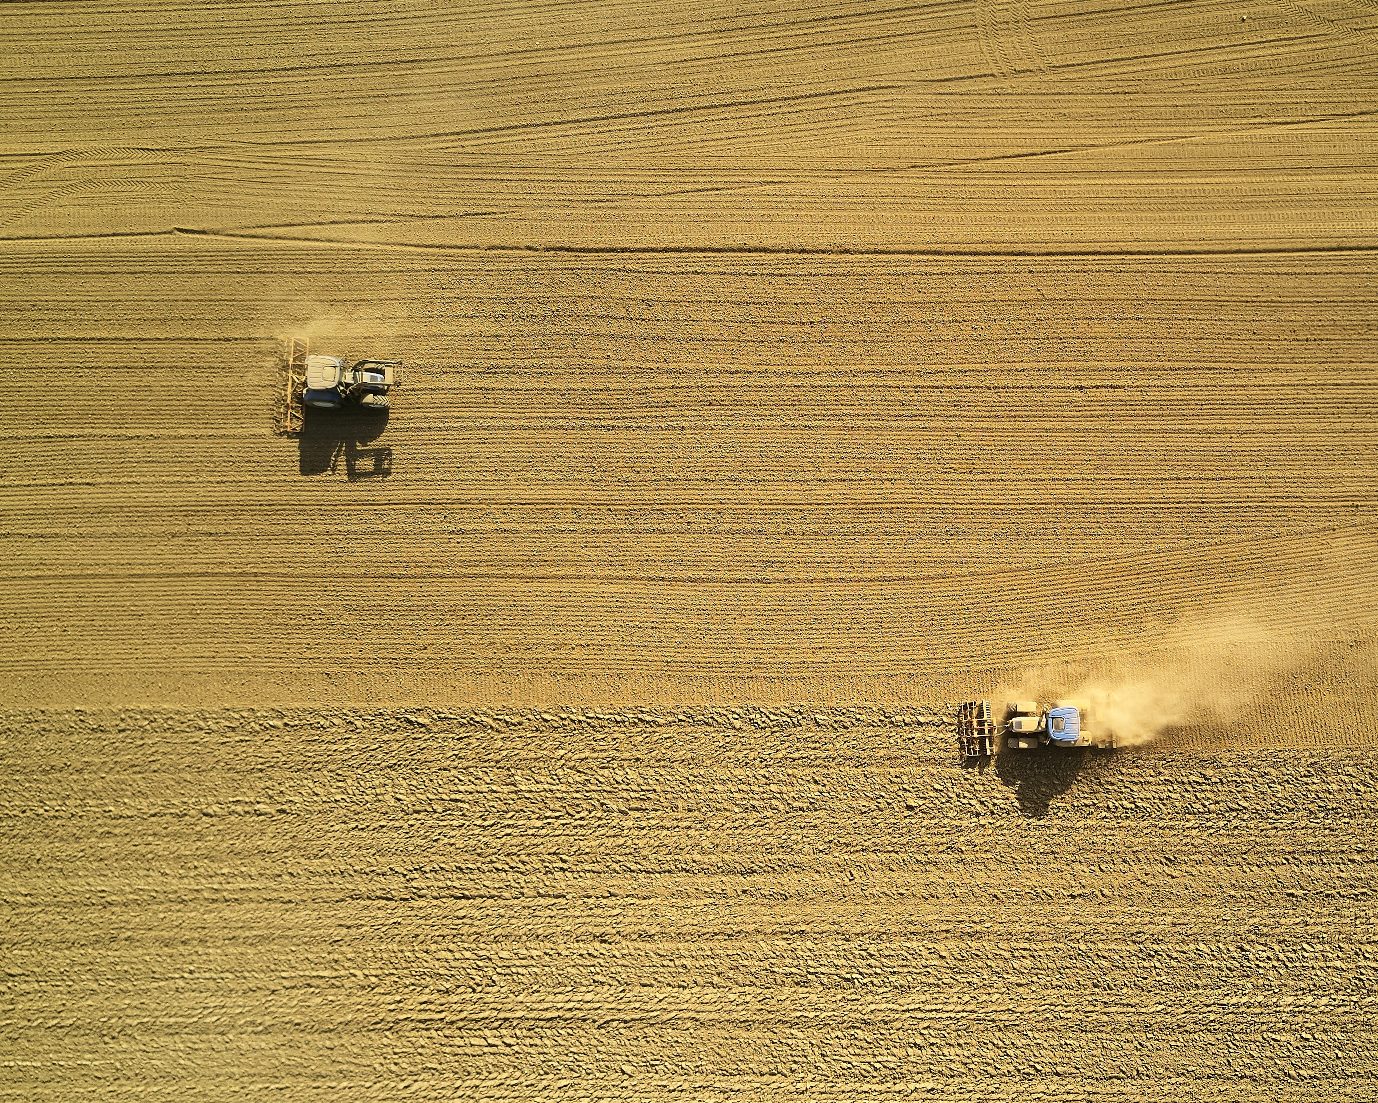 Un quarto dei raccolti globali a rischio se l’agricoltura non si adatta ai cambiamenti climatici